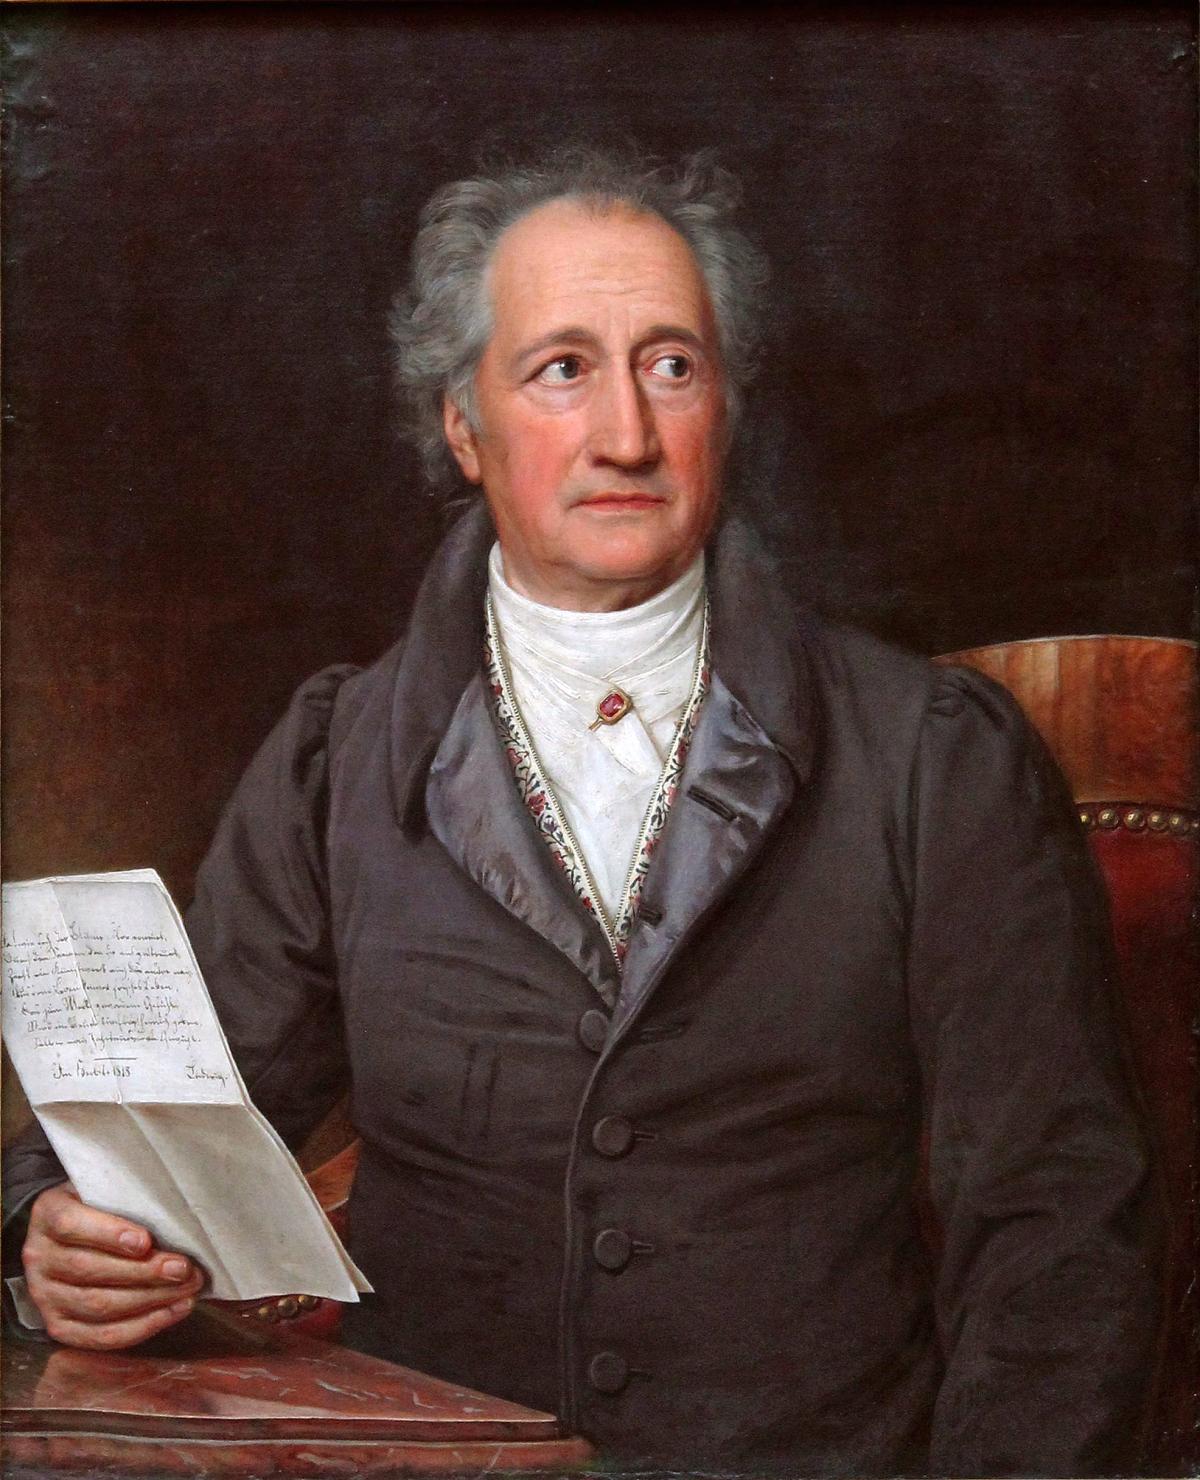 Friedrich August Wolf